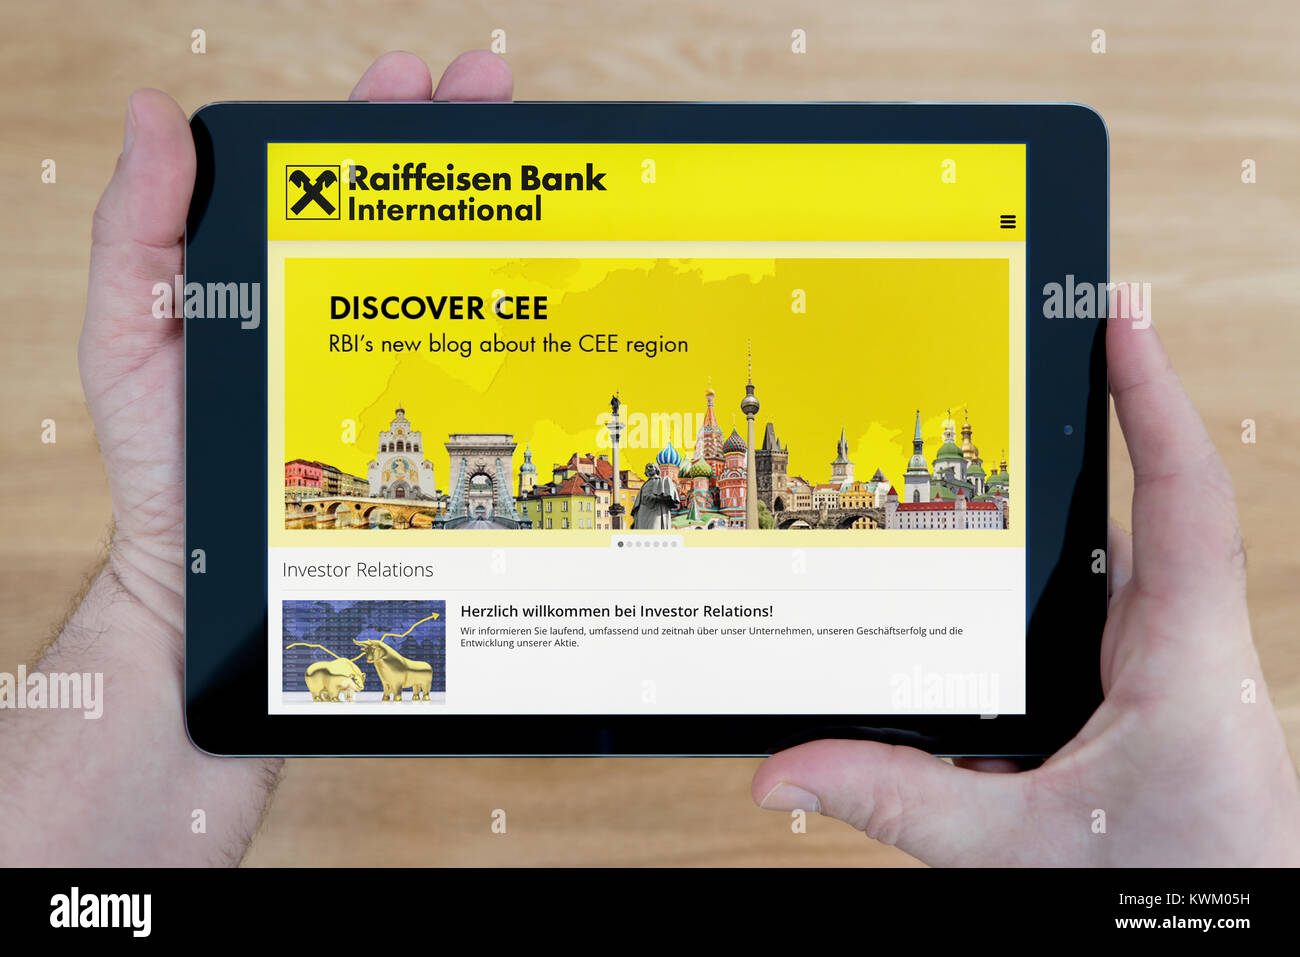 Un homme regarde la RBI (Raiffeisen Bank International) site sur sa tablette iPad, sur une table en bois page contexte (usage éditorial uniquement) Banque D'Images